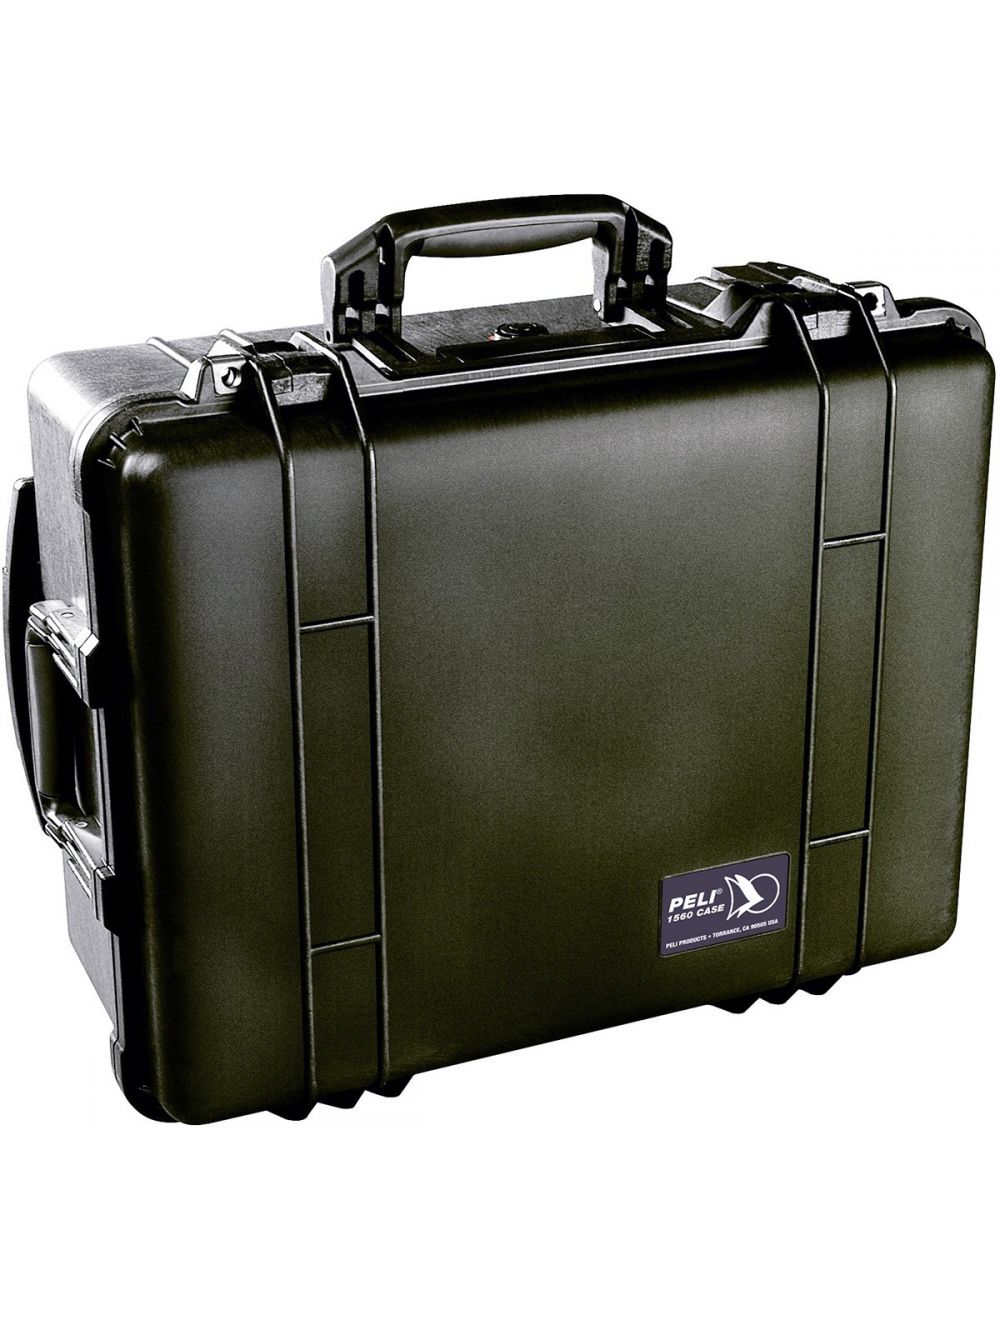 Inzichtelijk Floreren in het geheim Peli Case 1560SC Laptop reiskoffer groot zwart met vakverdelers kopen?  Zaklampen.nl